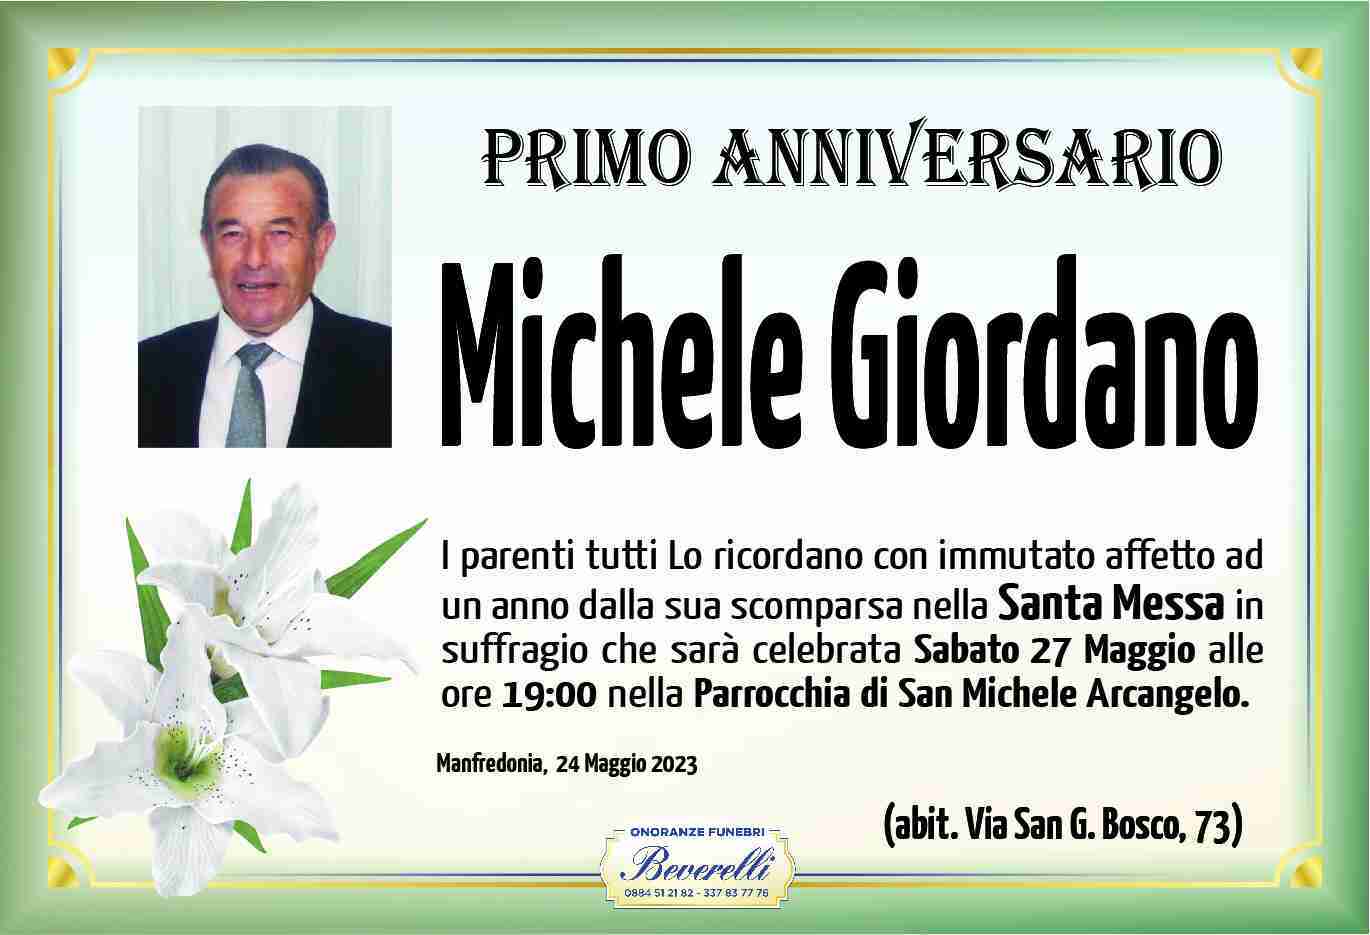 Michele Giordano